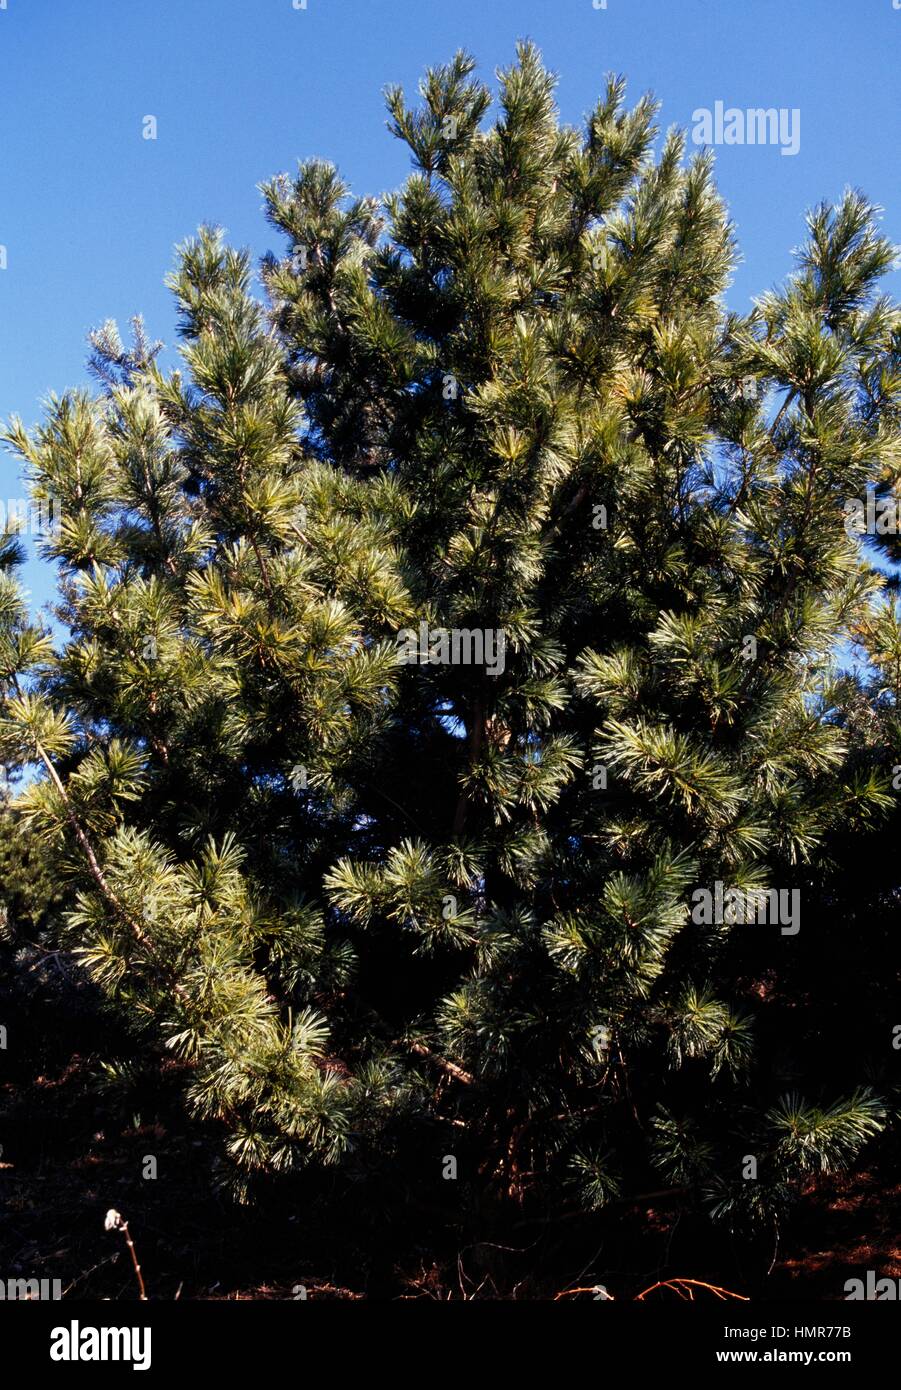 Korean pine (Pinus koraiensis), Pinaceae. Stock Photo